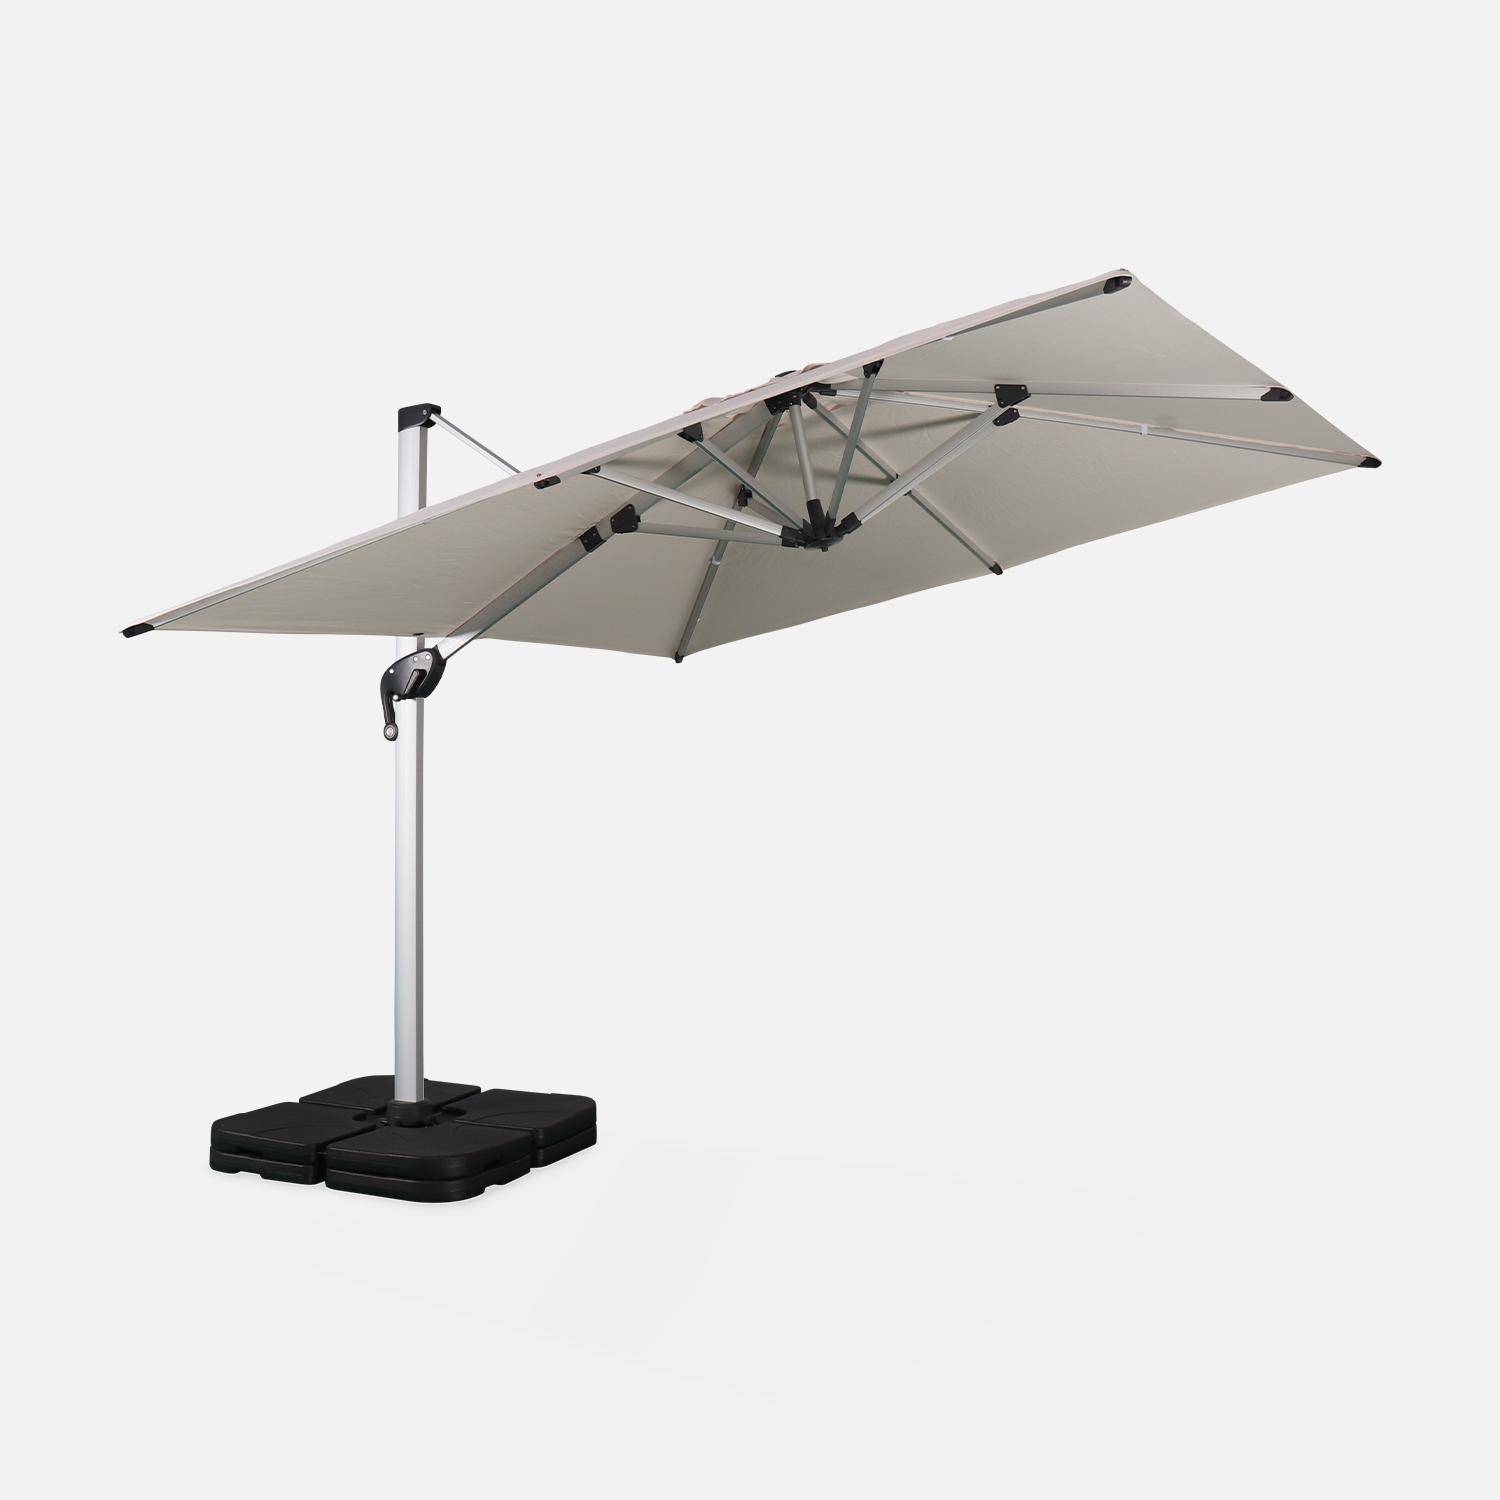 Parasol déporté haut de gamme carré 3x3m – PYLA Beige – Toile Sunbrella fabriquée en France par Dickson , structure en aluminium anodisé, rotatif, housse de protection Photo3